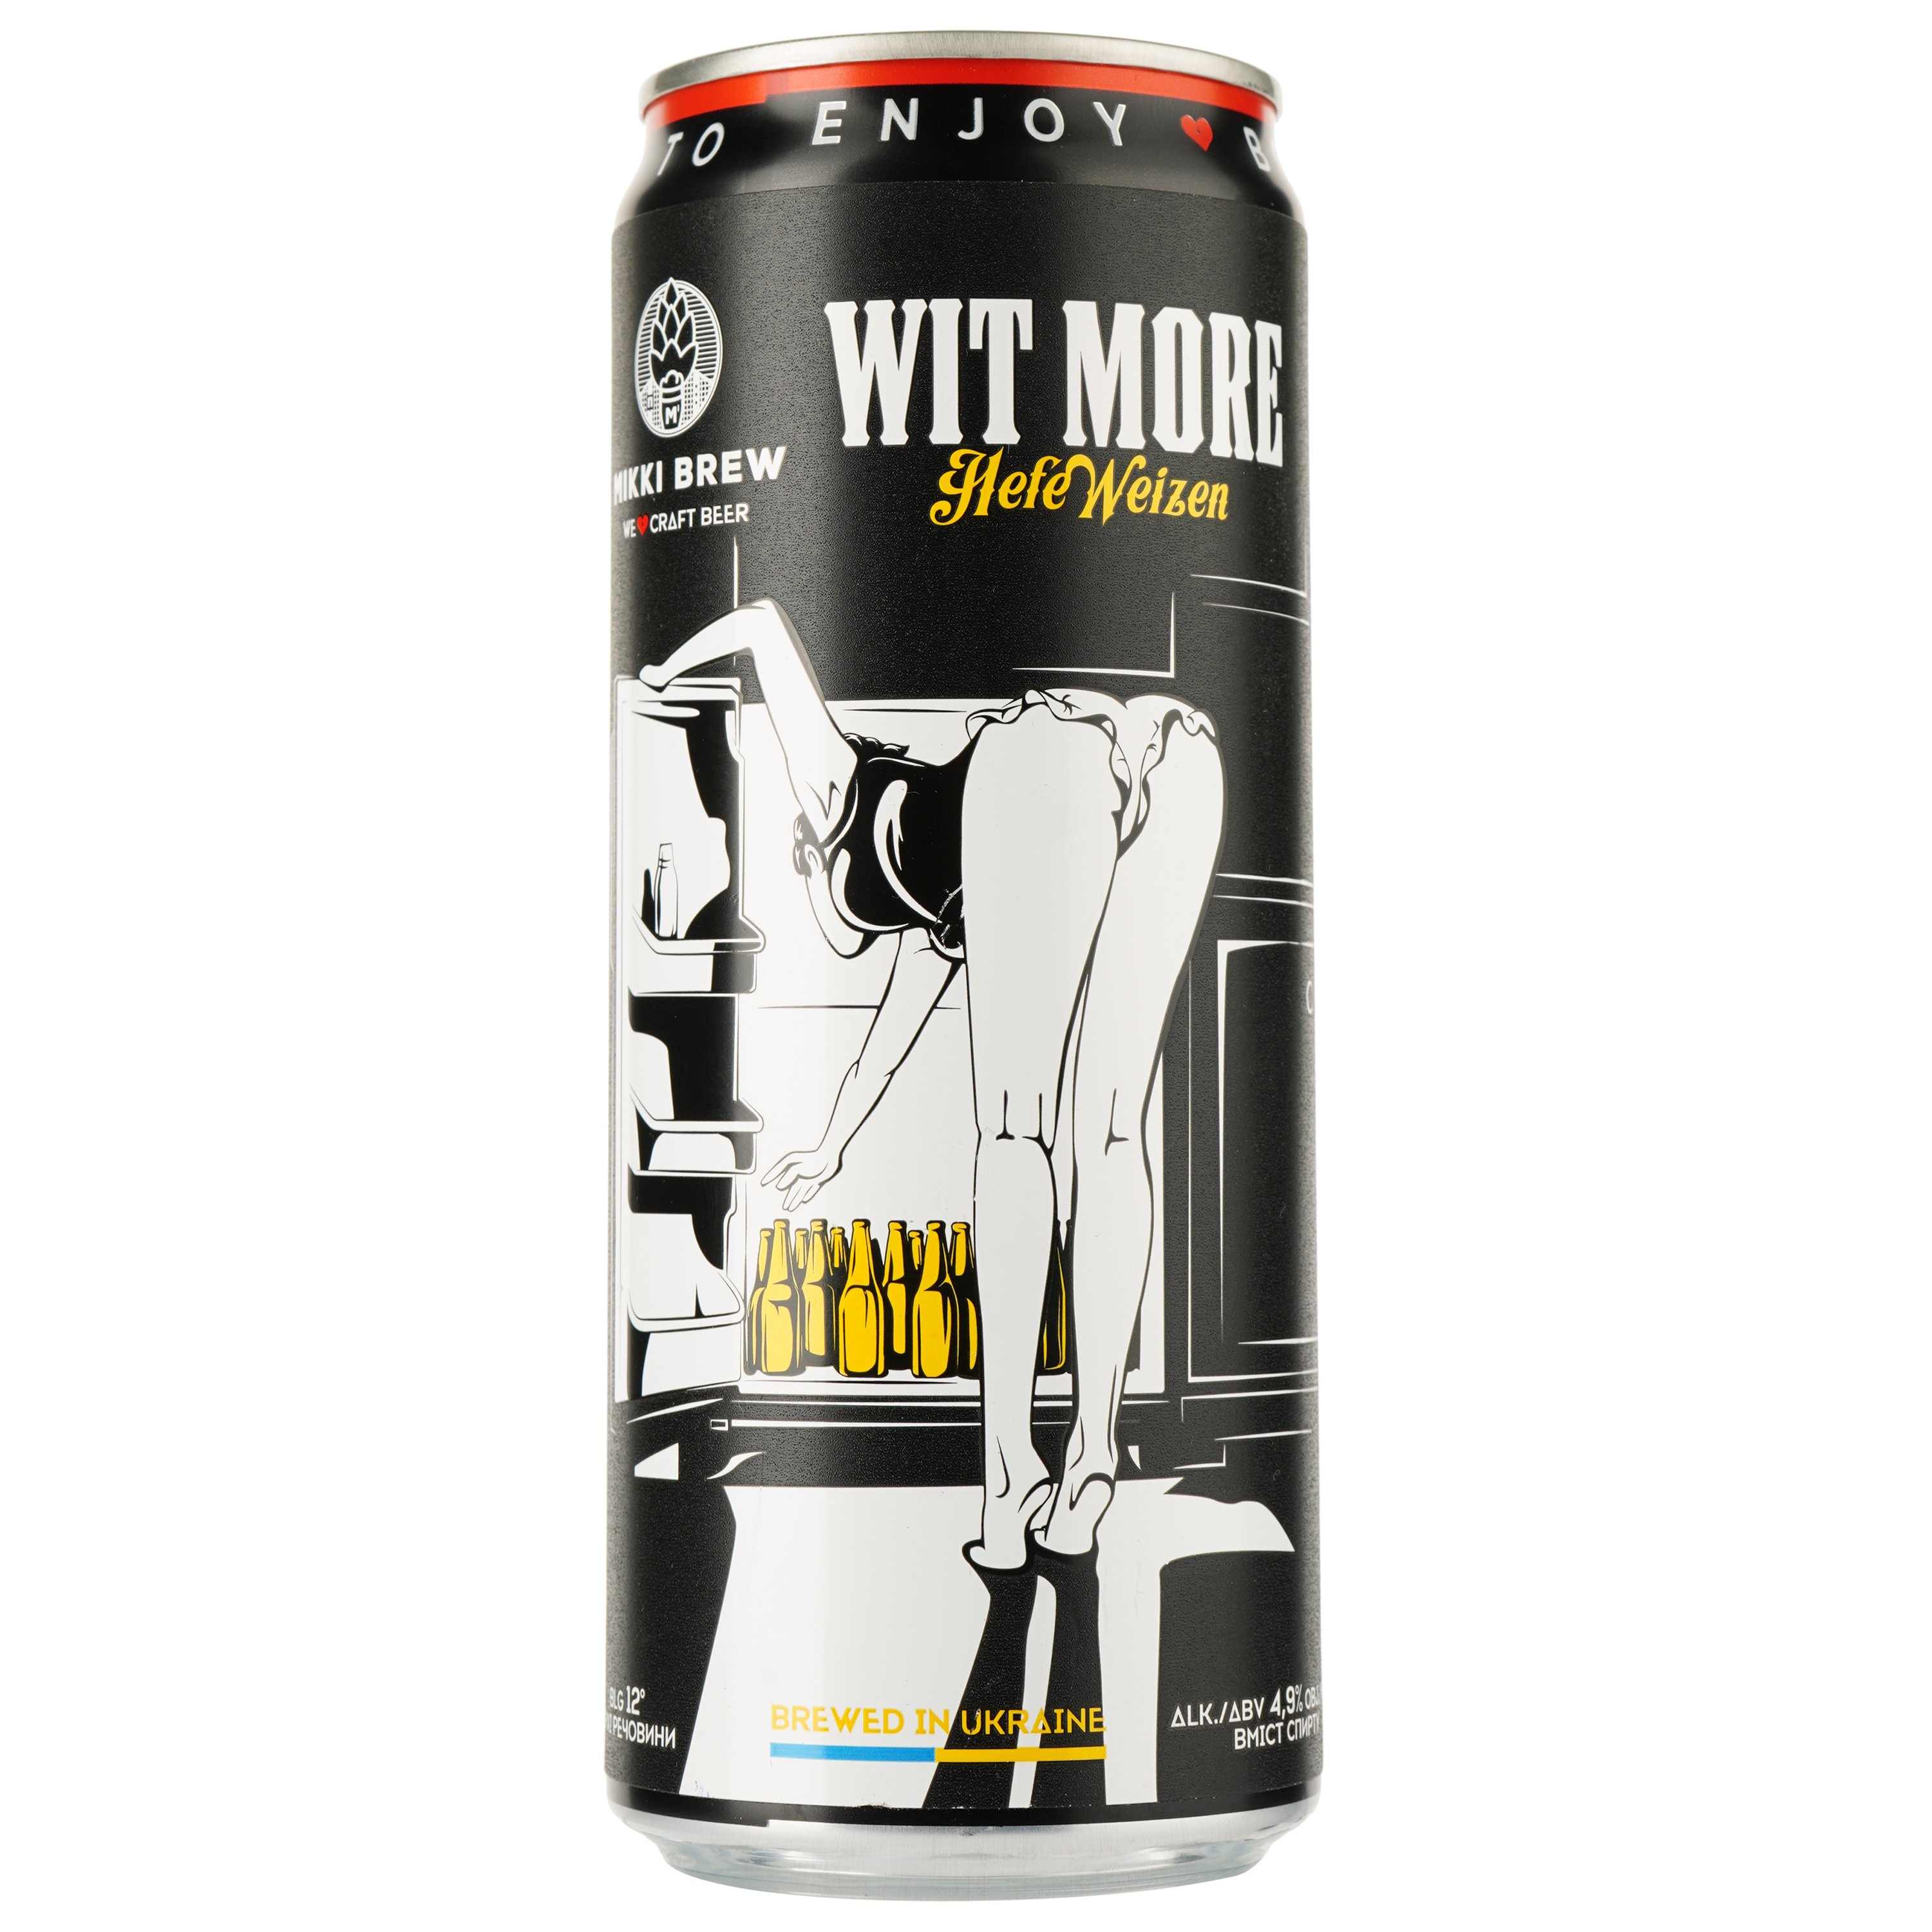 Пиво Mikki Brew Wit More, світле, нефільтроване, 4,9%, з/б, 0,33 л - фото 1